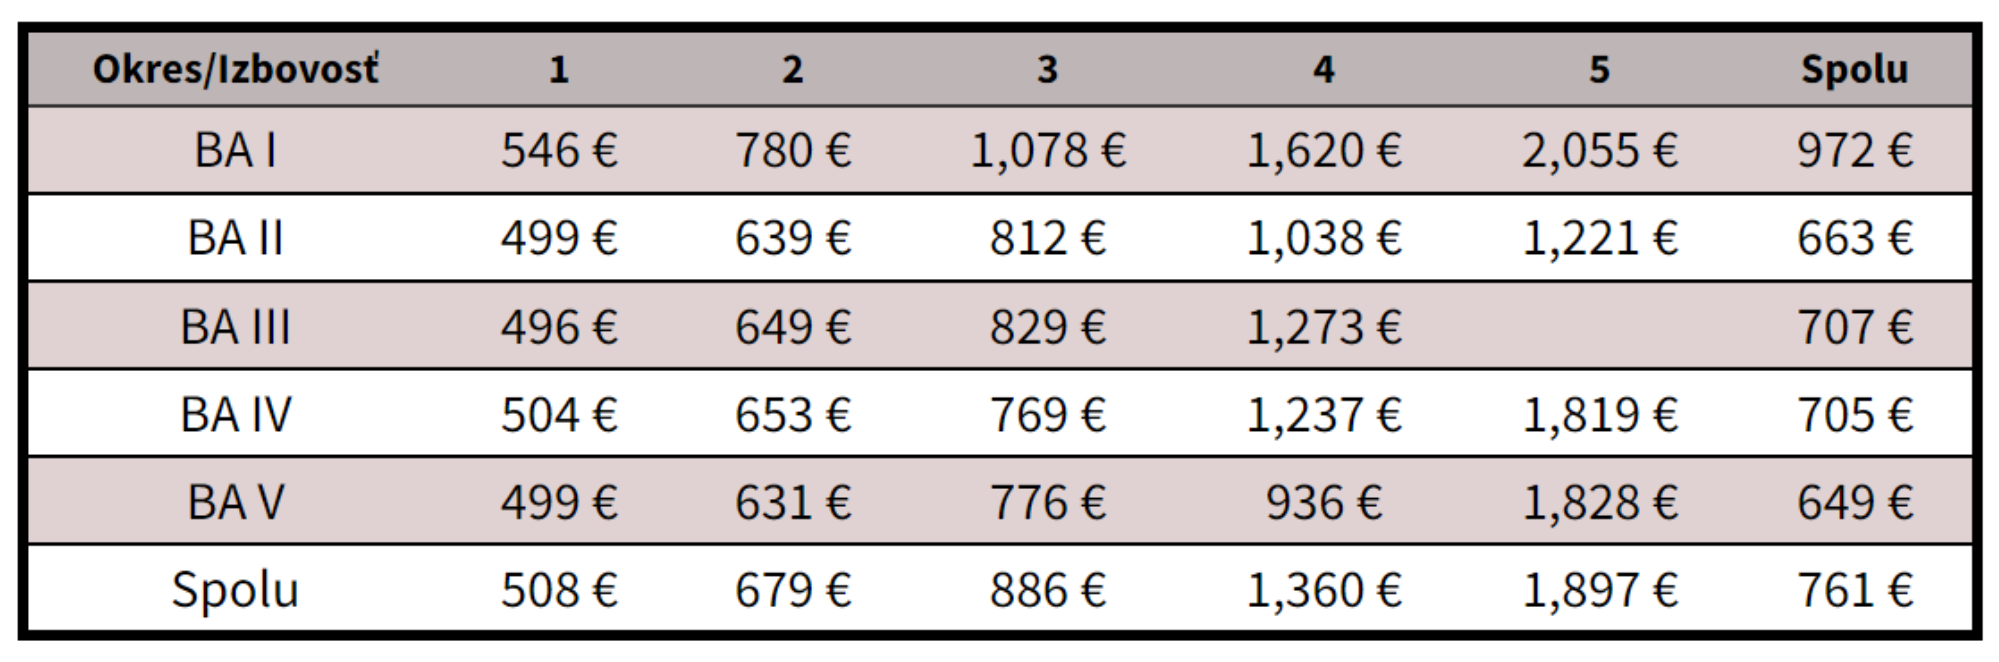 Tabuľka 2: Priemerné ceny prenájmu v Bratislave vrátane energií počas 4.Q 2021